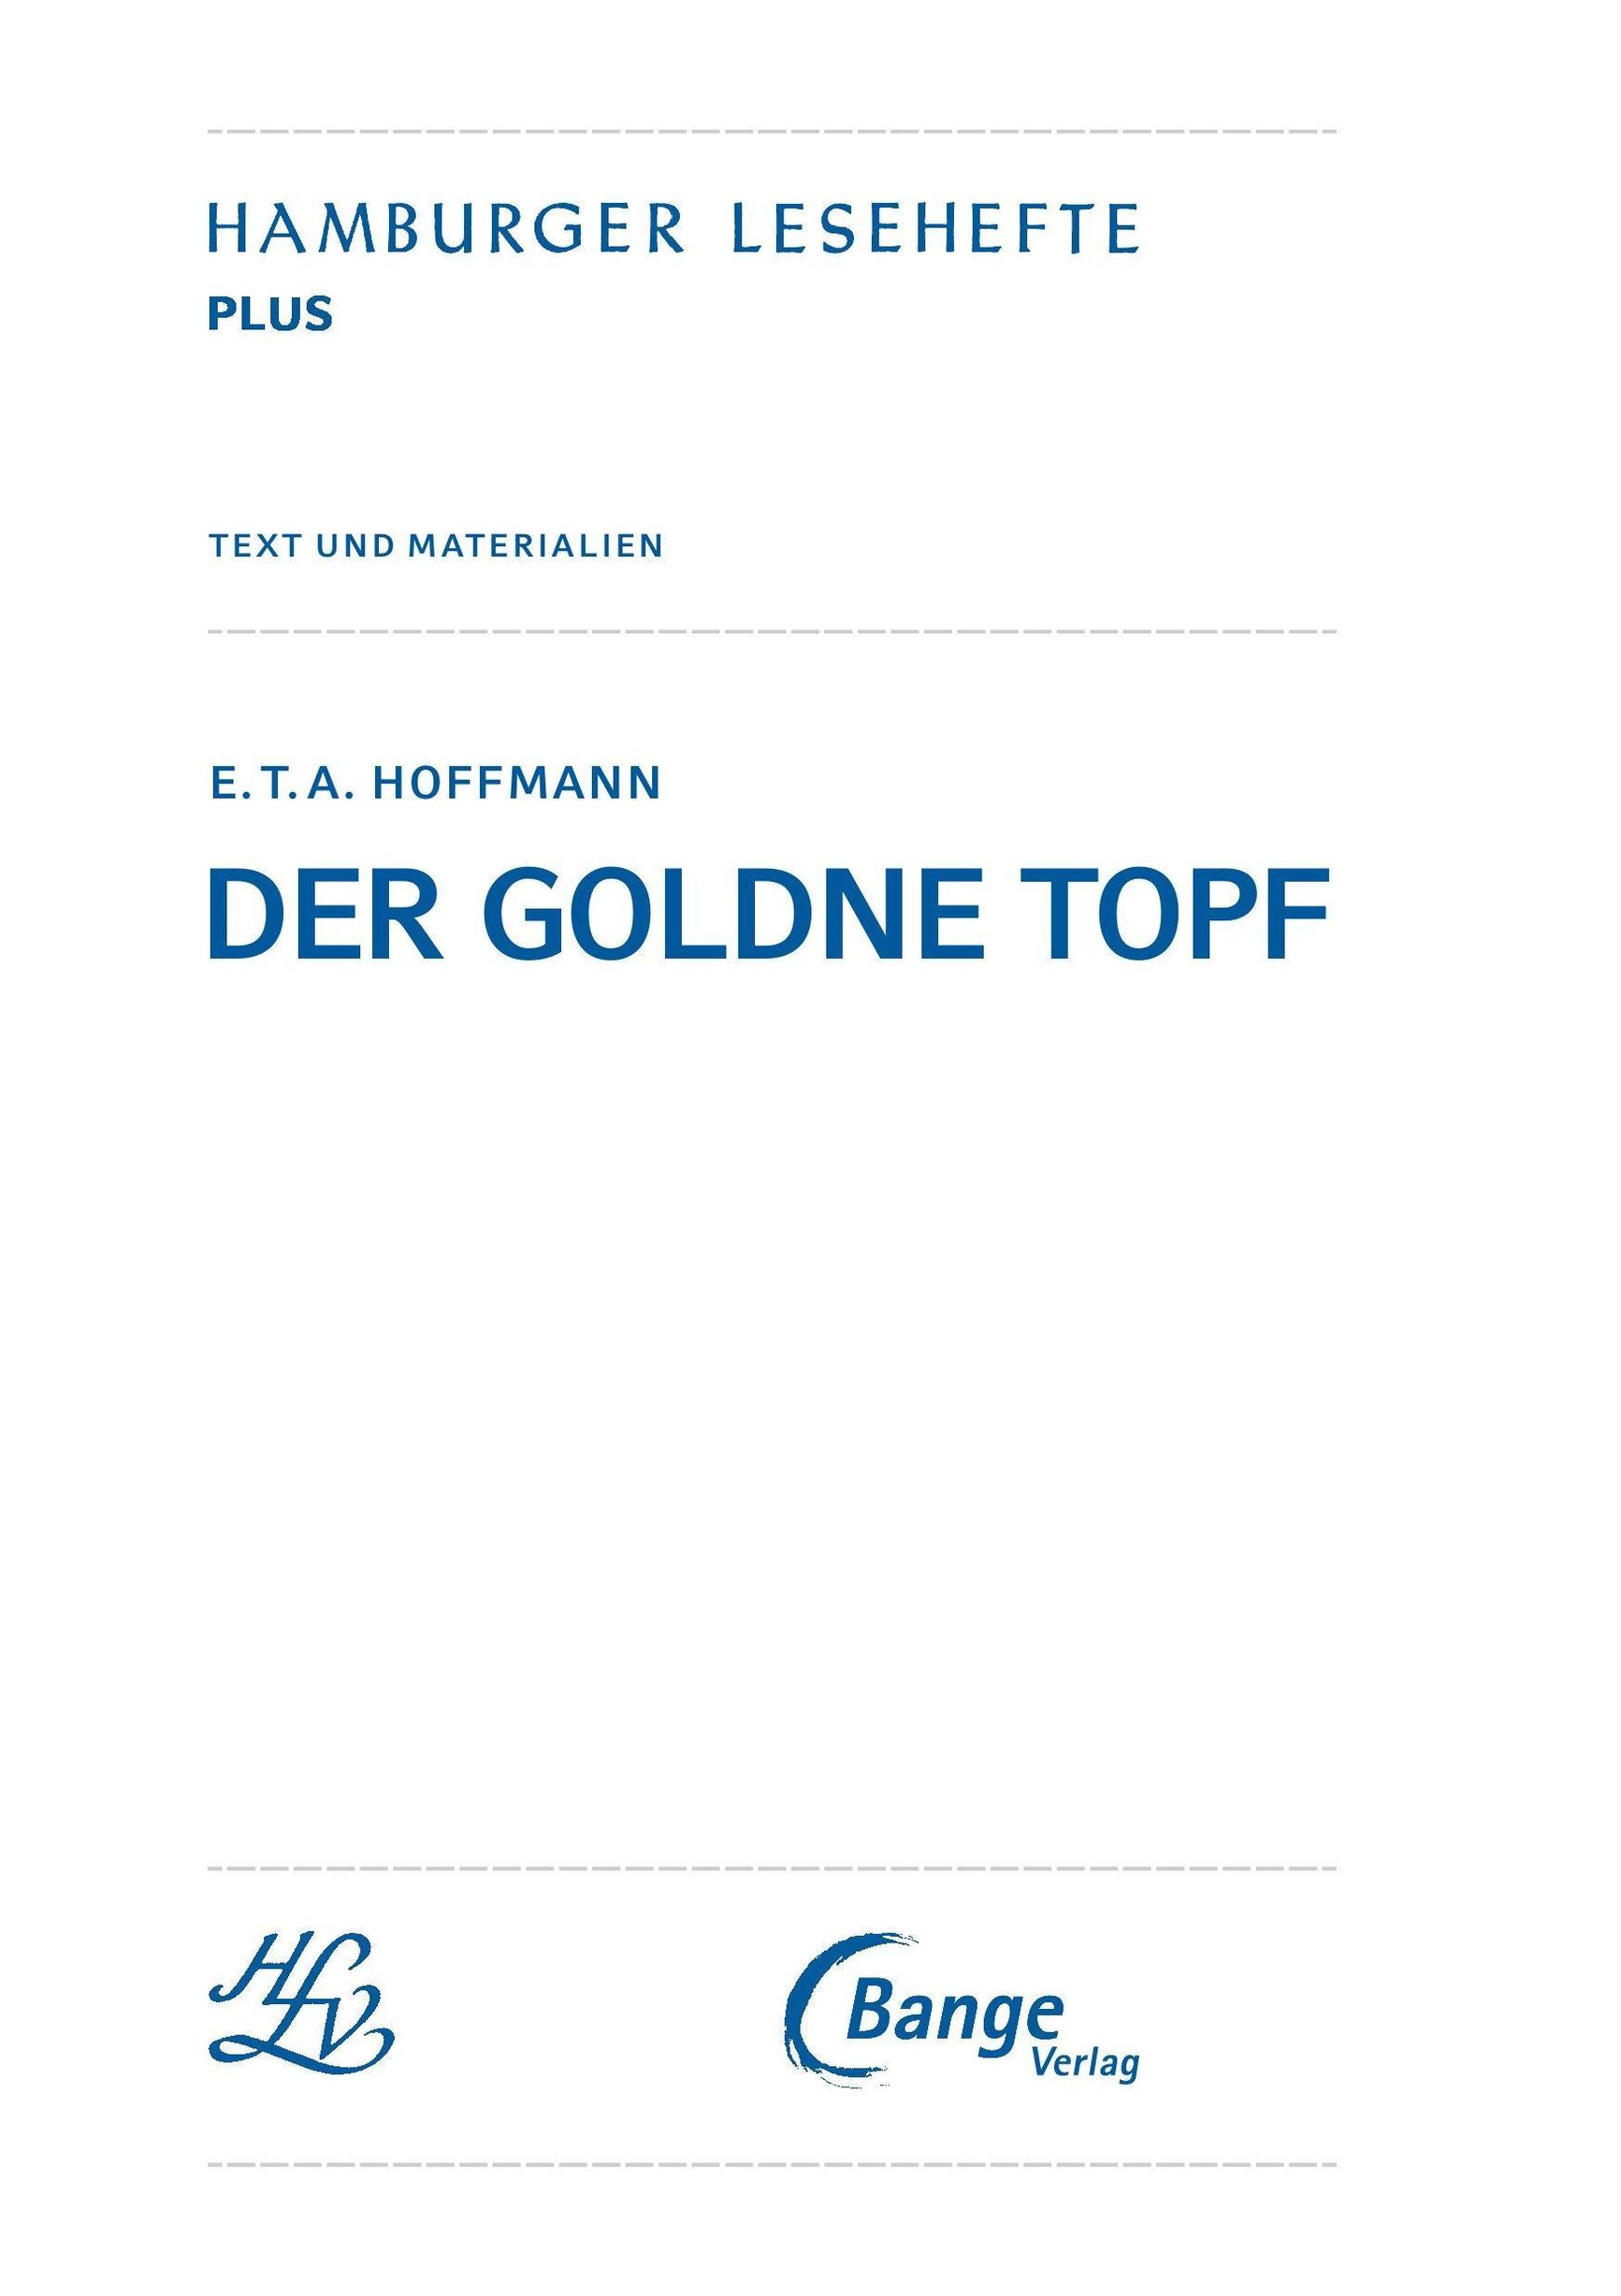 Der goldne Topf von E.T.A. Hoffmann Textausgabe Buch - Weltbild.at